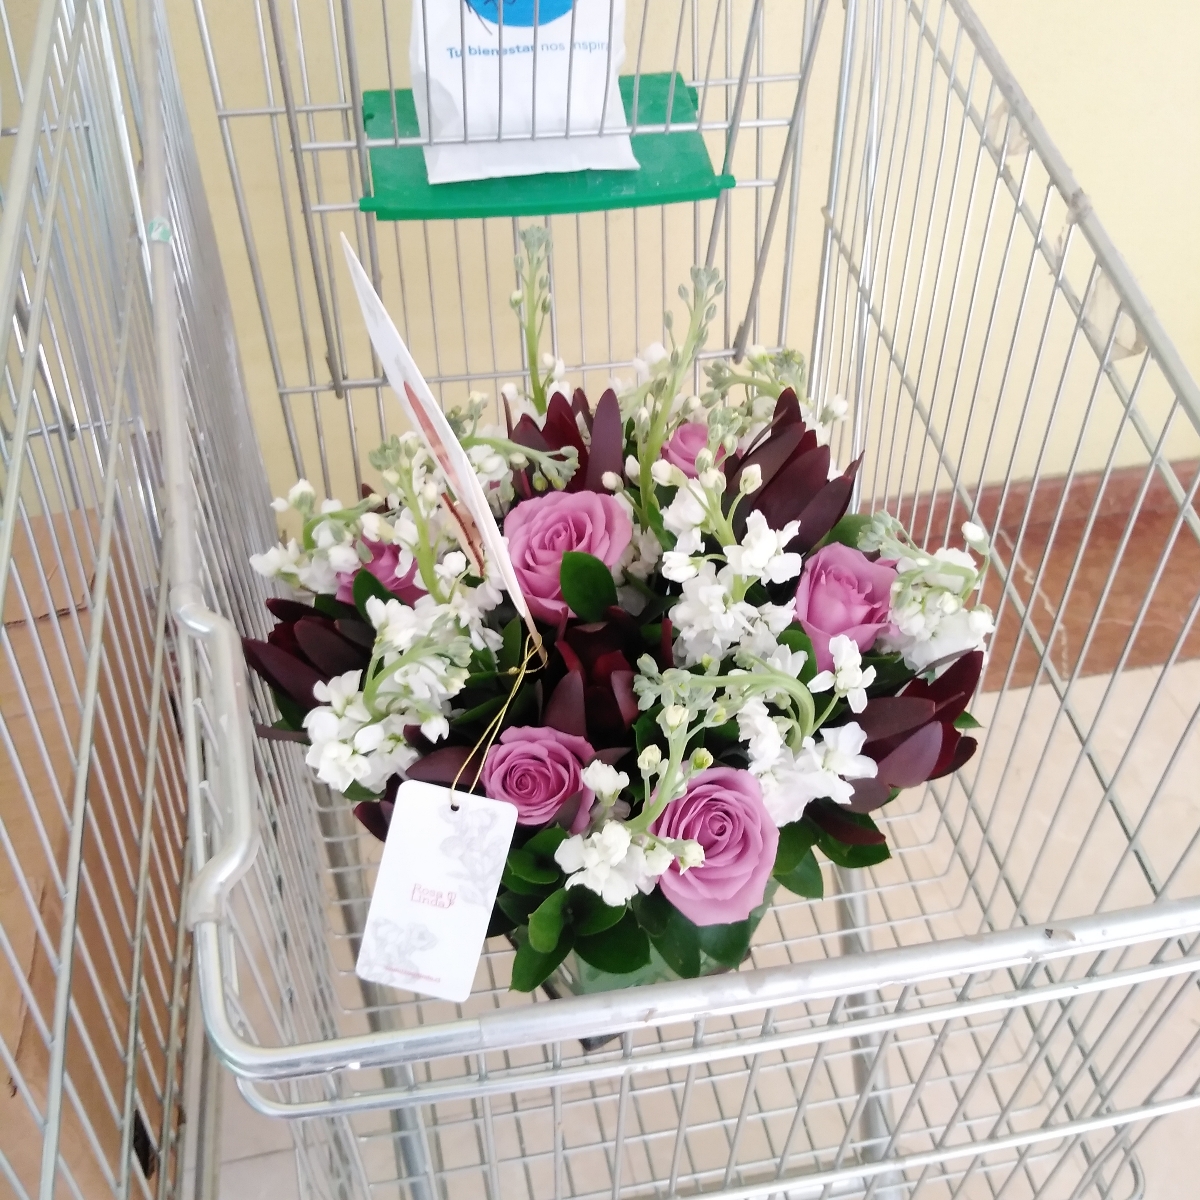 Melissa rosas Lila - Arreglo floral con rosas lilas, leucadendros y alelíes blancos - Pedido 251907